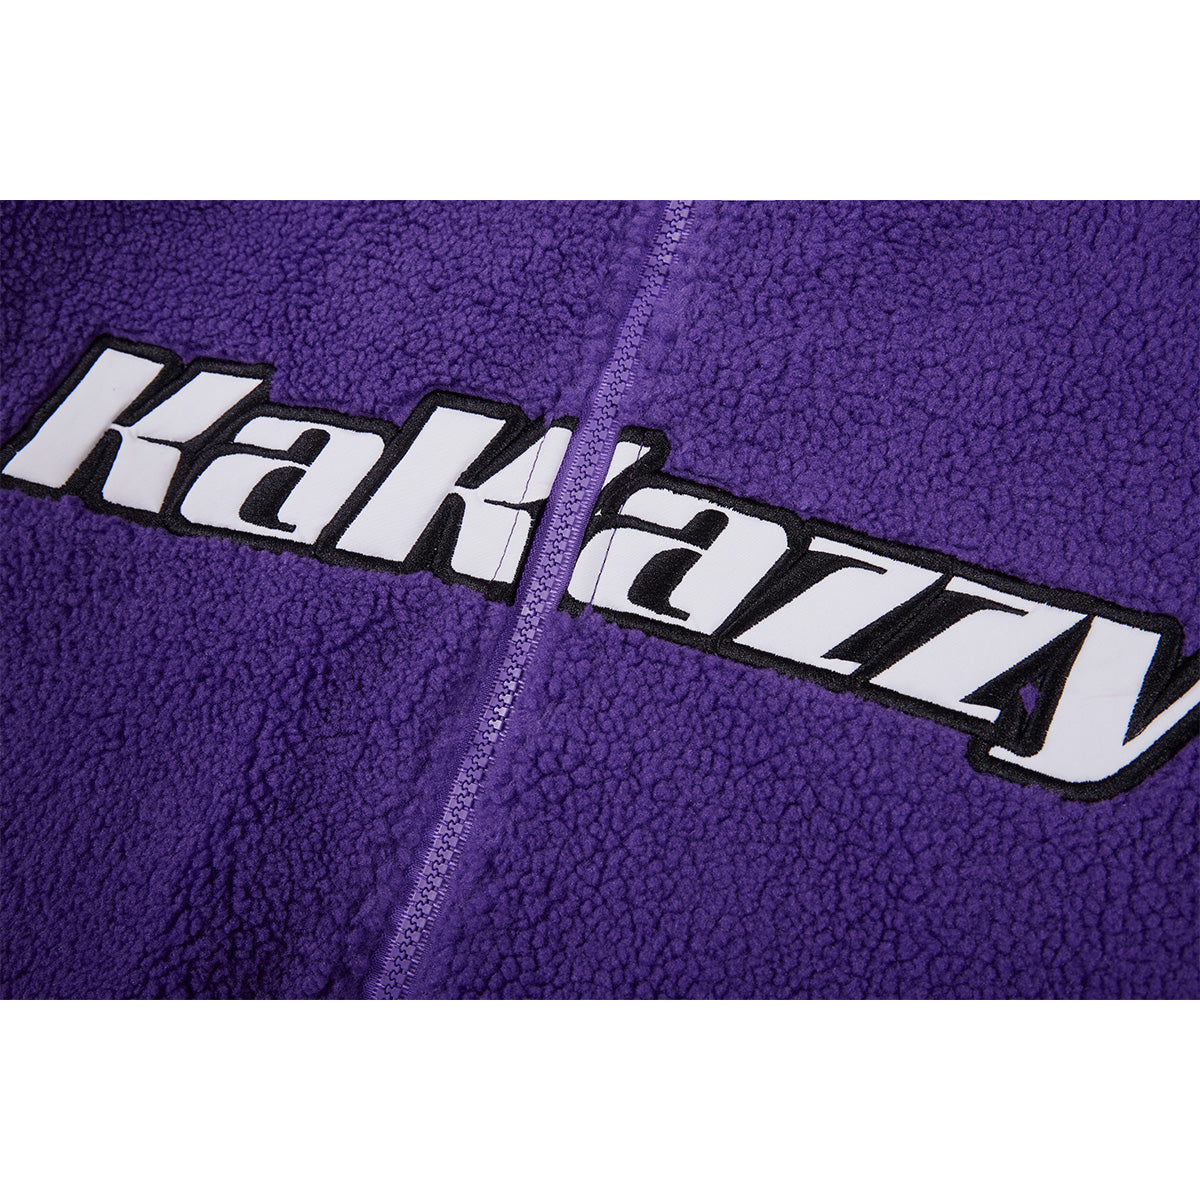 Kakazzy Sherpa Coat Purple